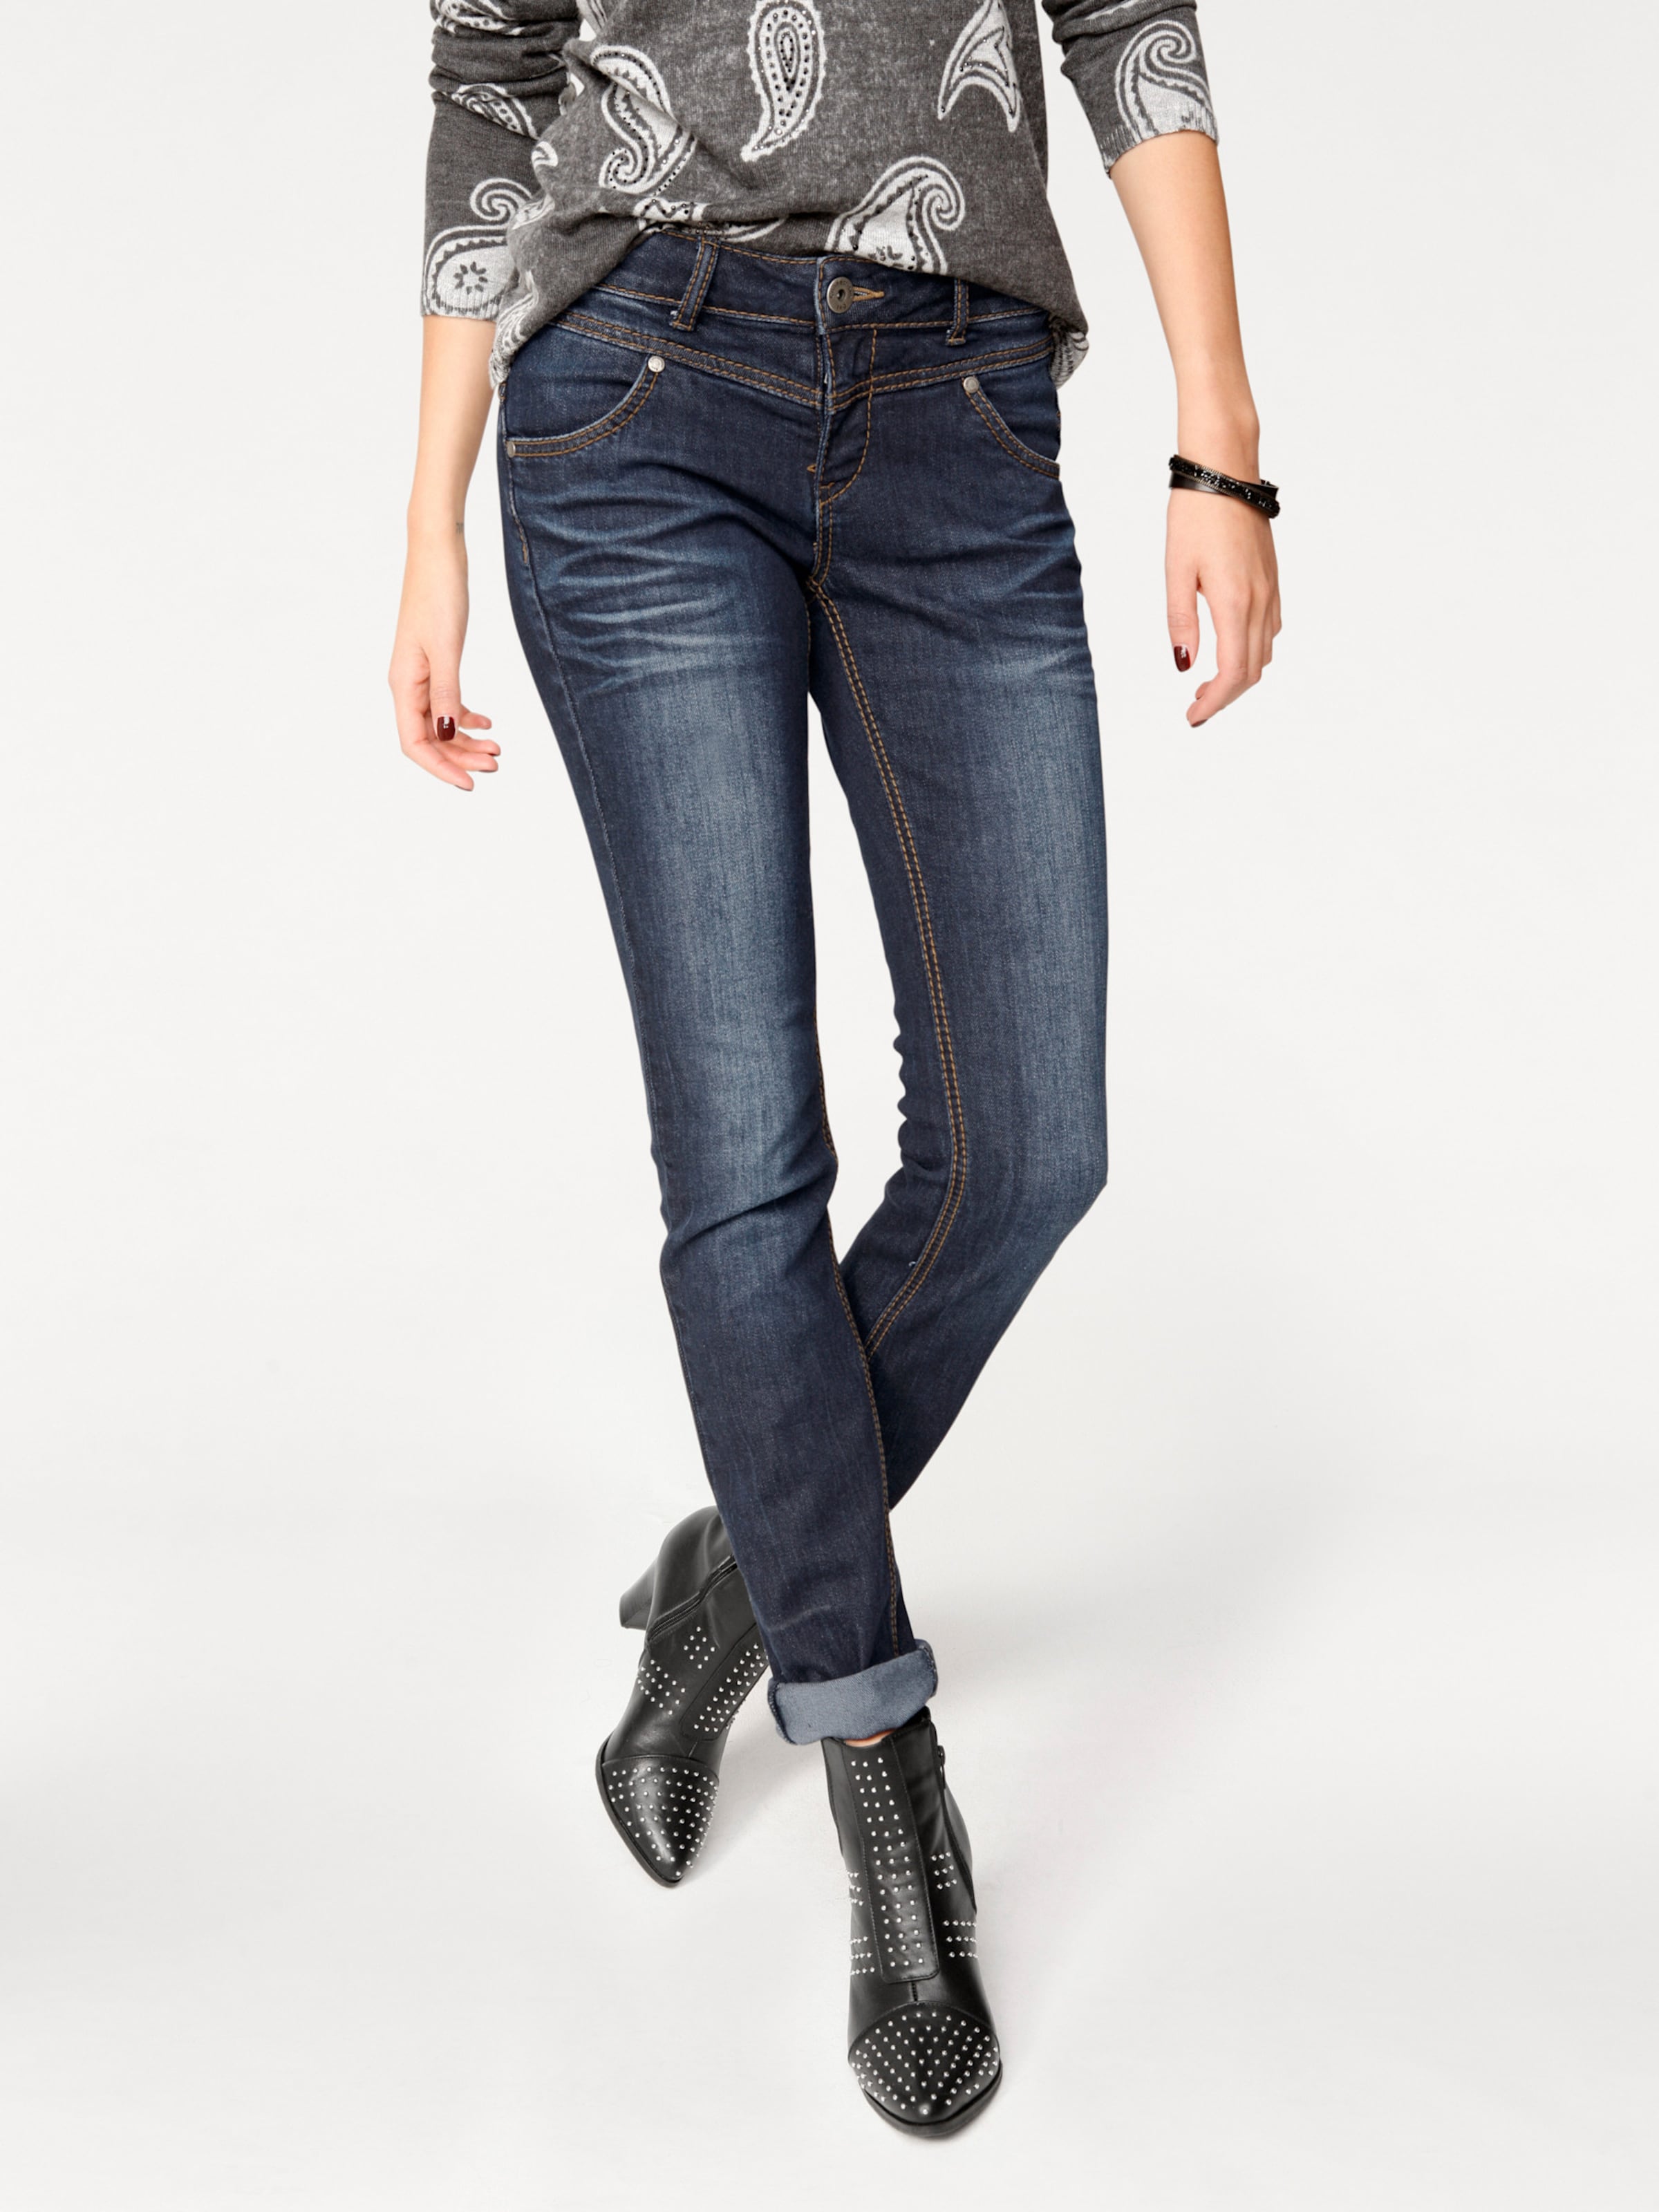 Witt Damen Skinny-Jeans, blue denim